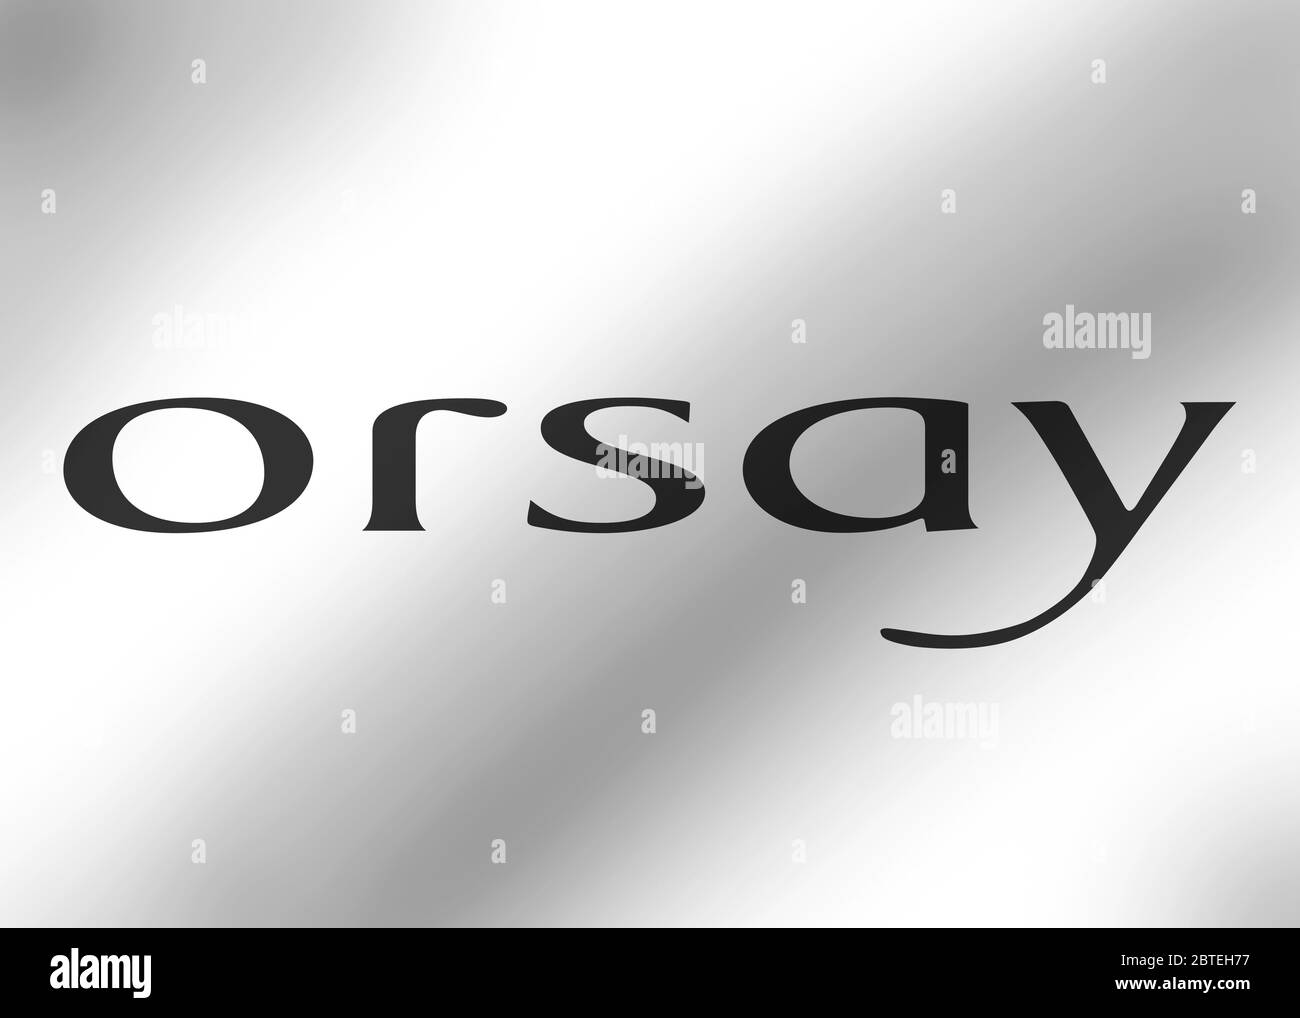 Orsay logo Stock Photo